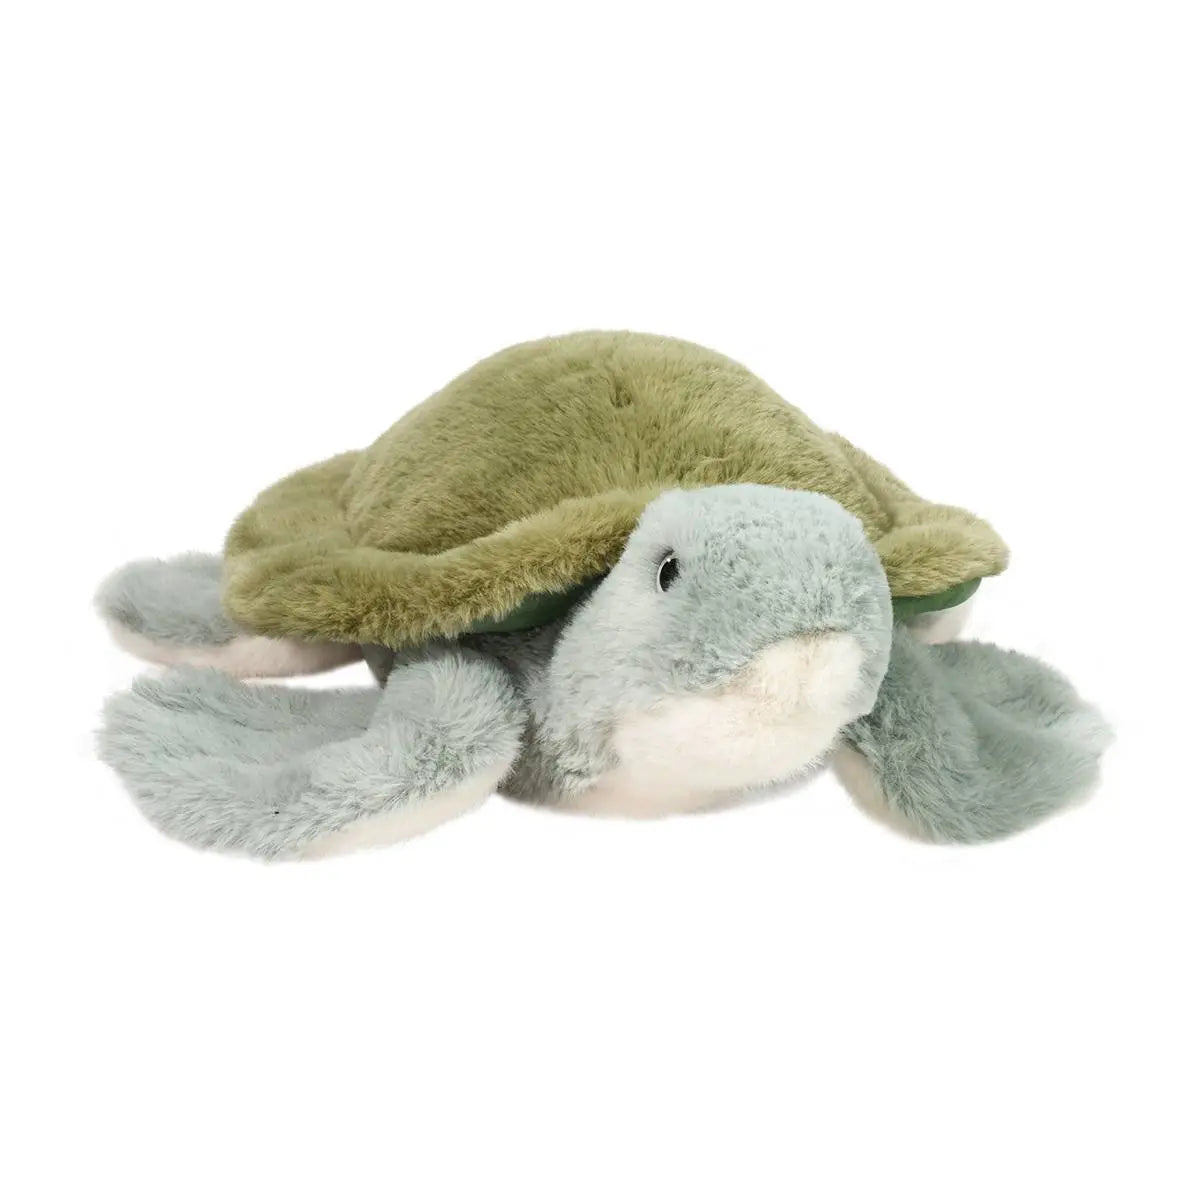 Sheldon Sea Turtle - Magpies Paducah